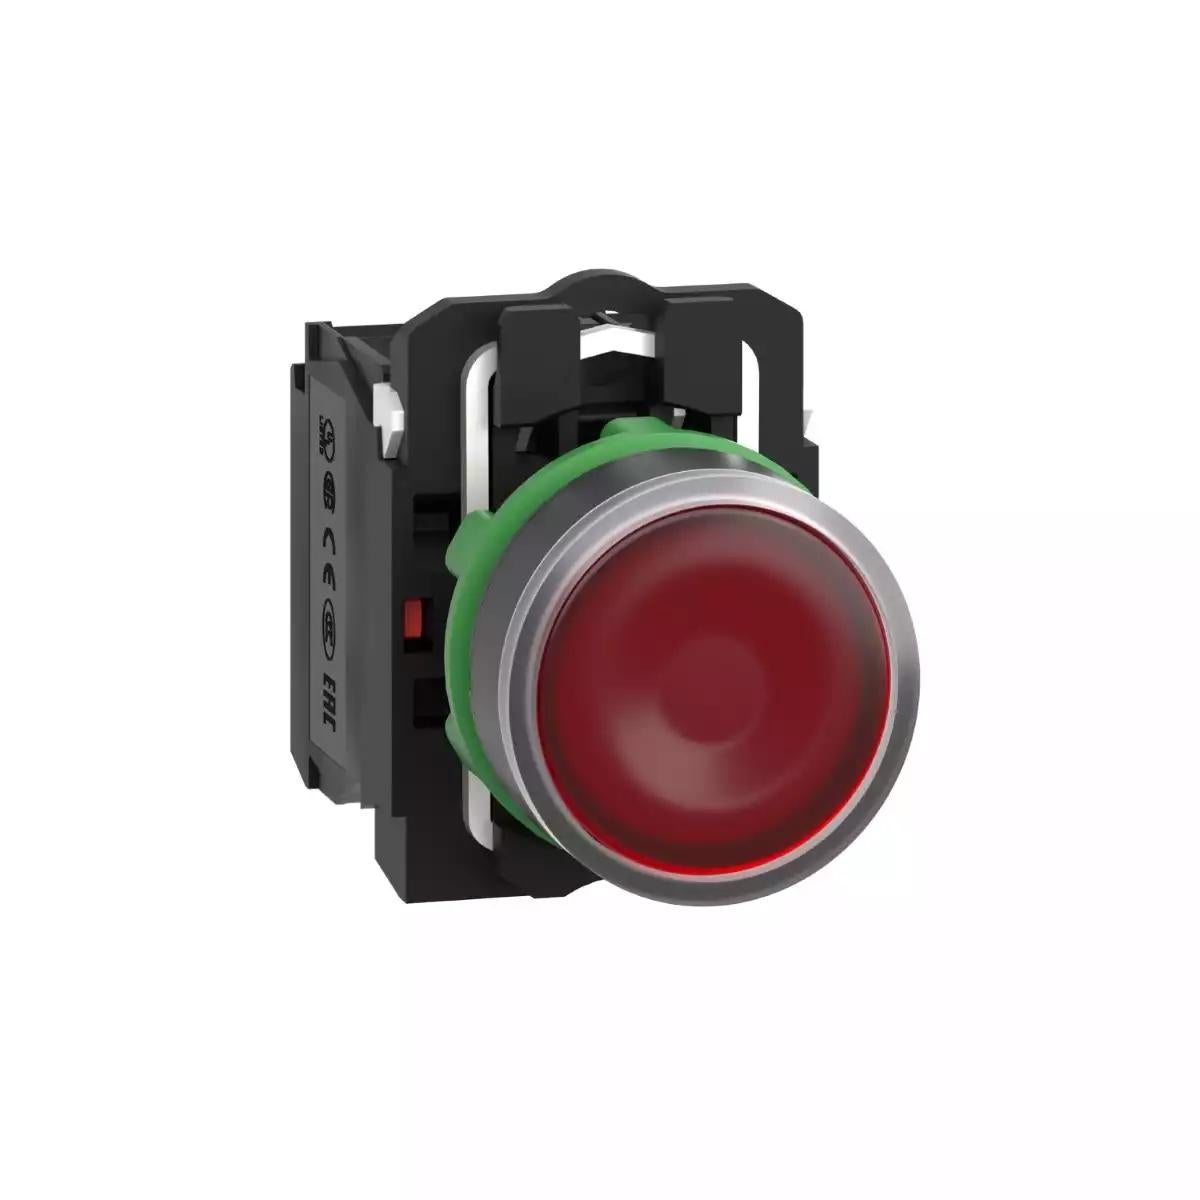 Illuminated push button, Harmony XB5, plastic, red flush, 22mm, universal LED, plain lens, 1NO + 1NC, 24V AC DC